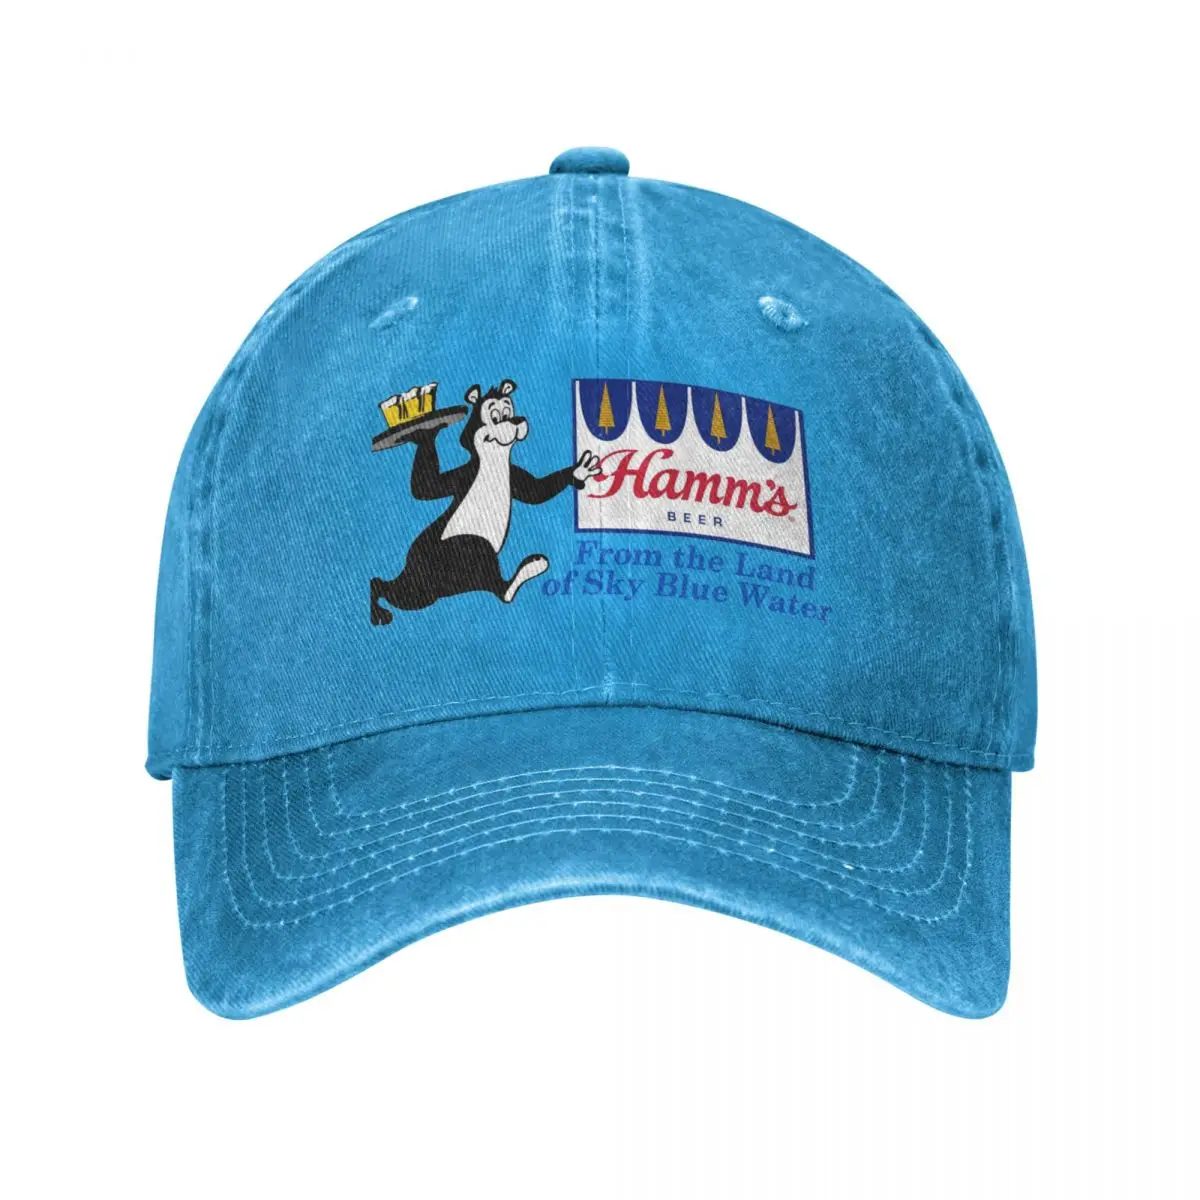 

Hamm's From the land of sky blue waters Baseball Cap Sunhat Trucker Cap Hip Hop Sun Hats For Women Men'S